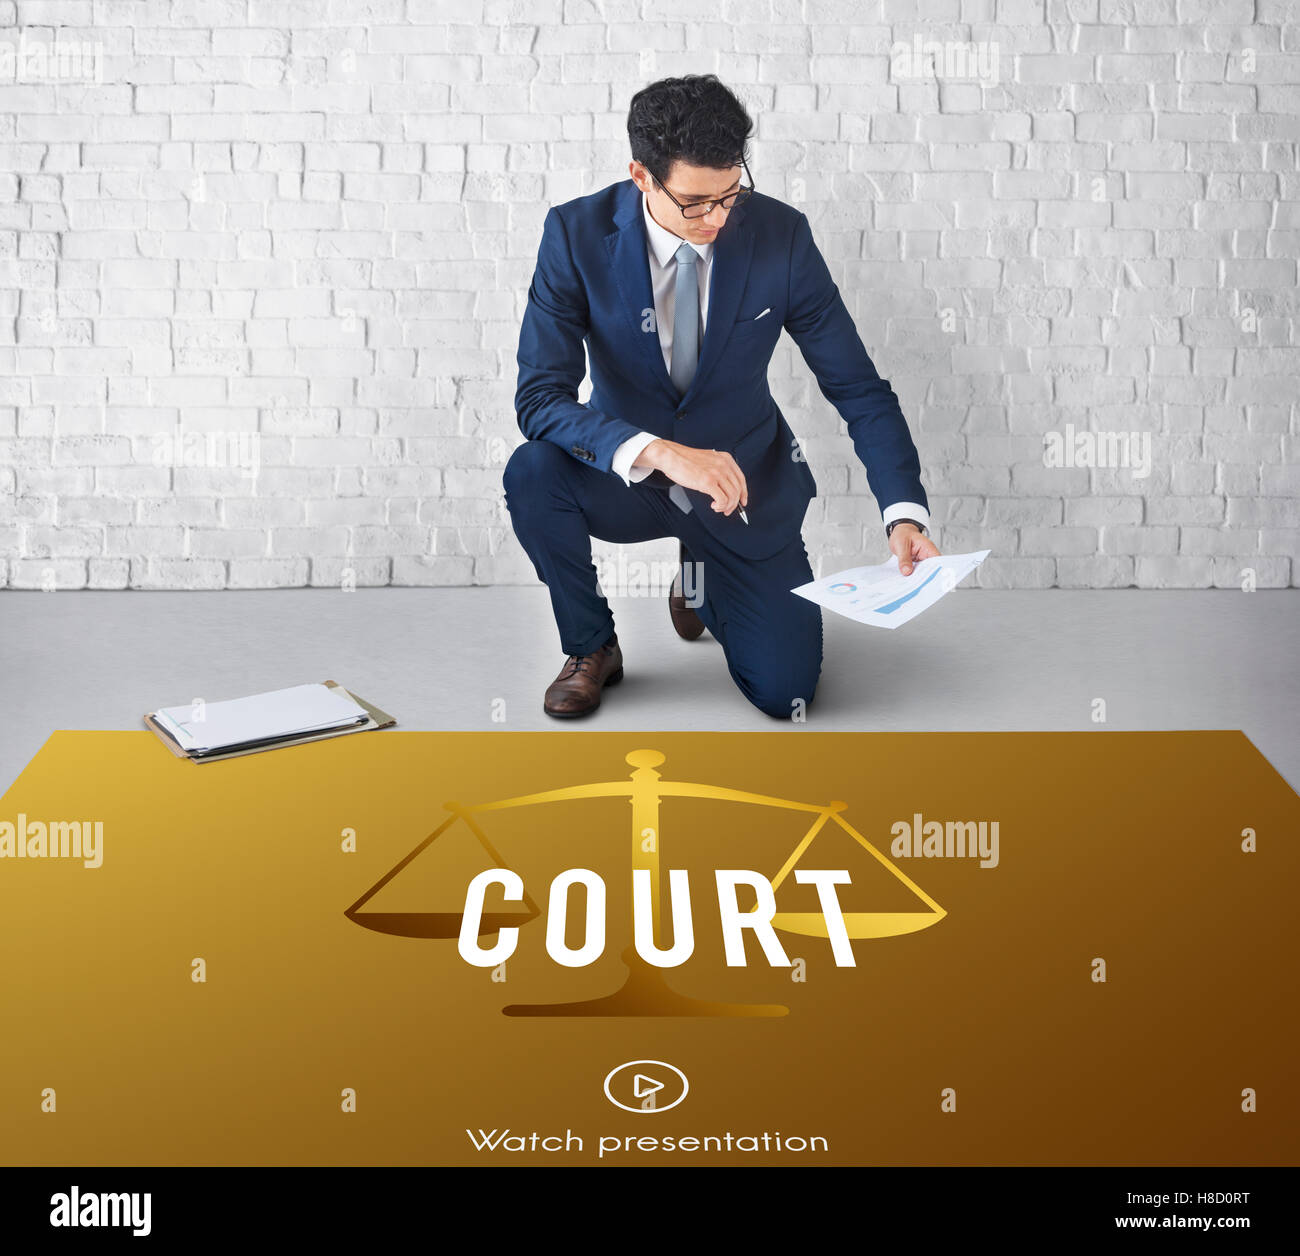 La loi de justice Cour concept icône Banque D'Images